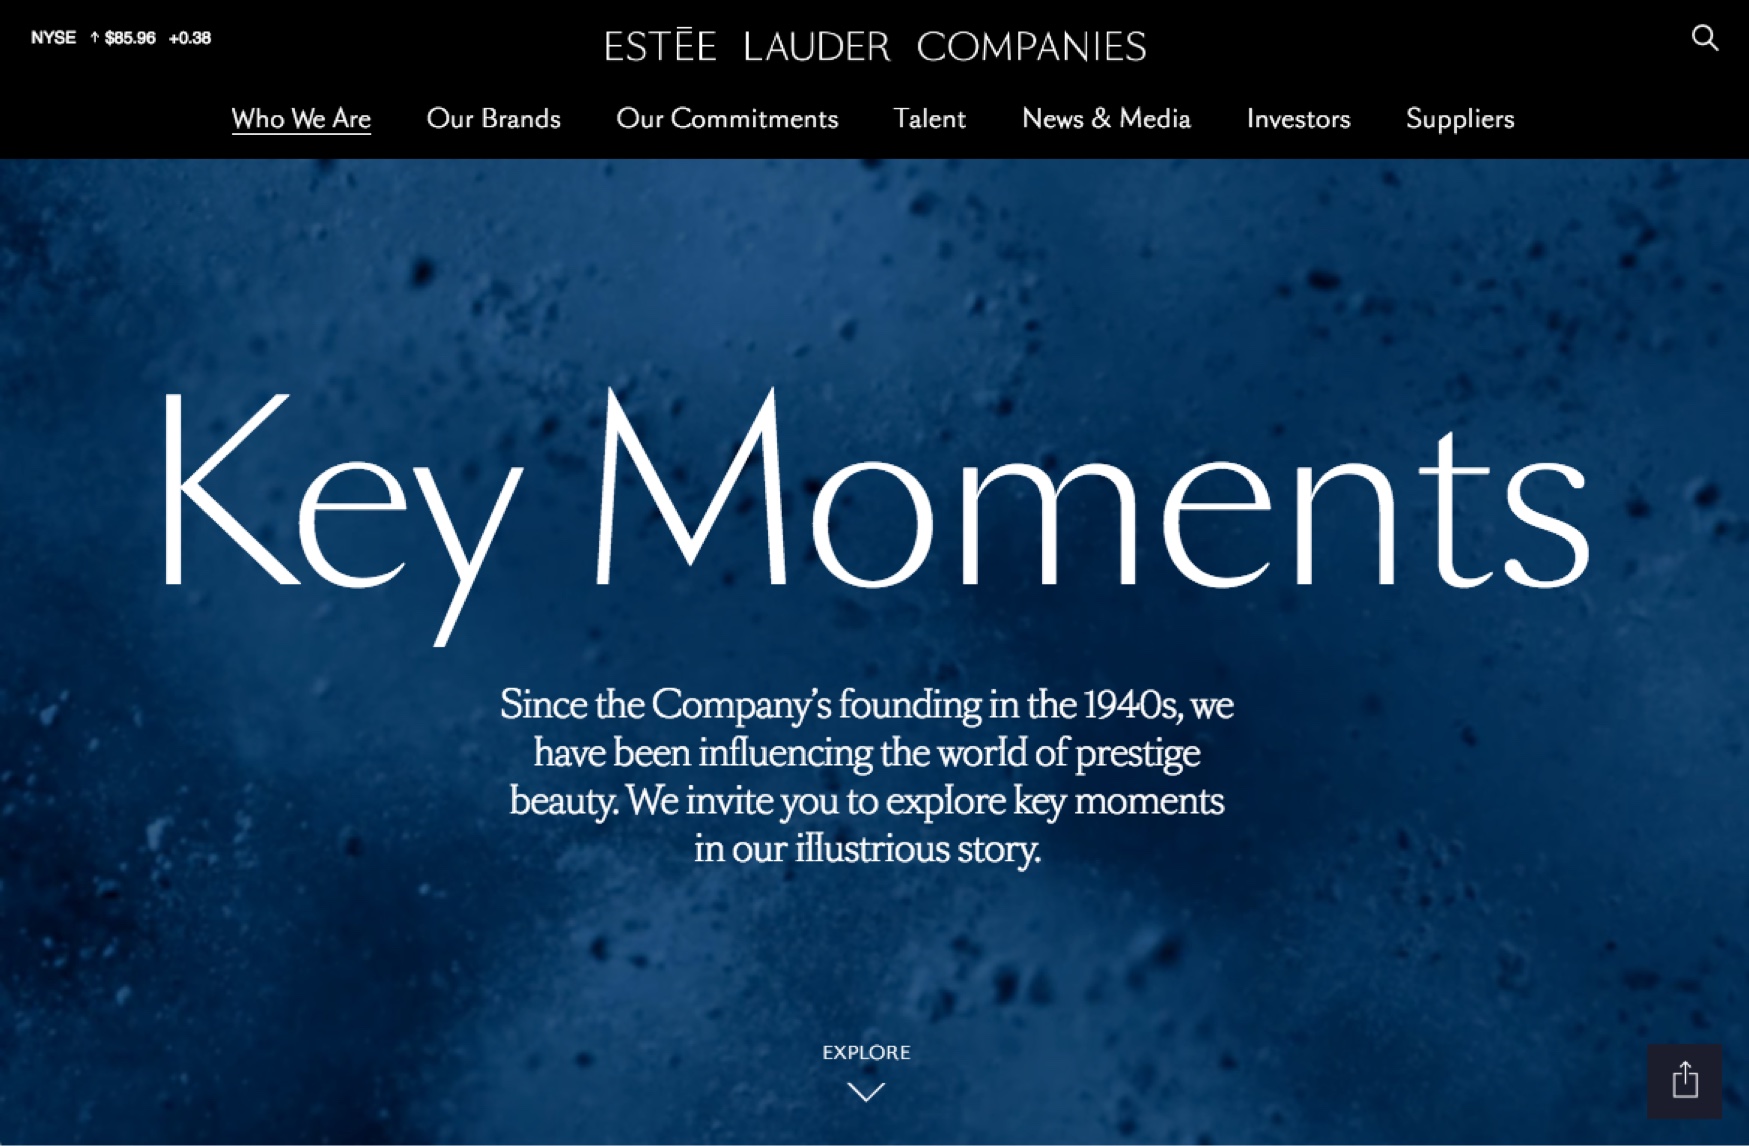 Estée Lauder Companies Key Moments timeline design